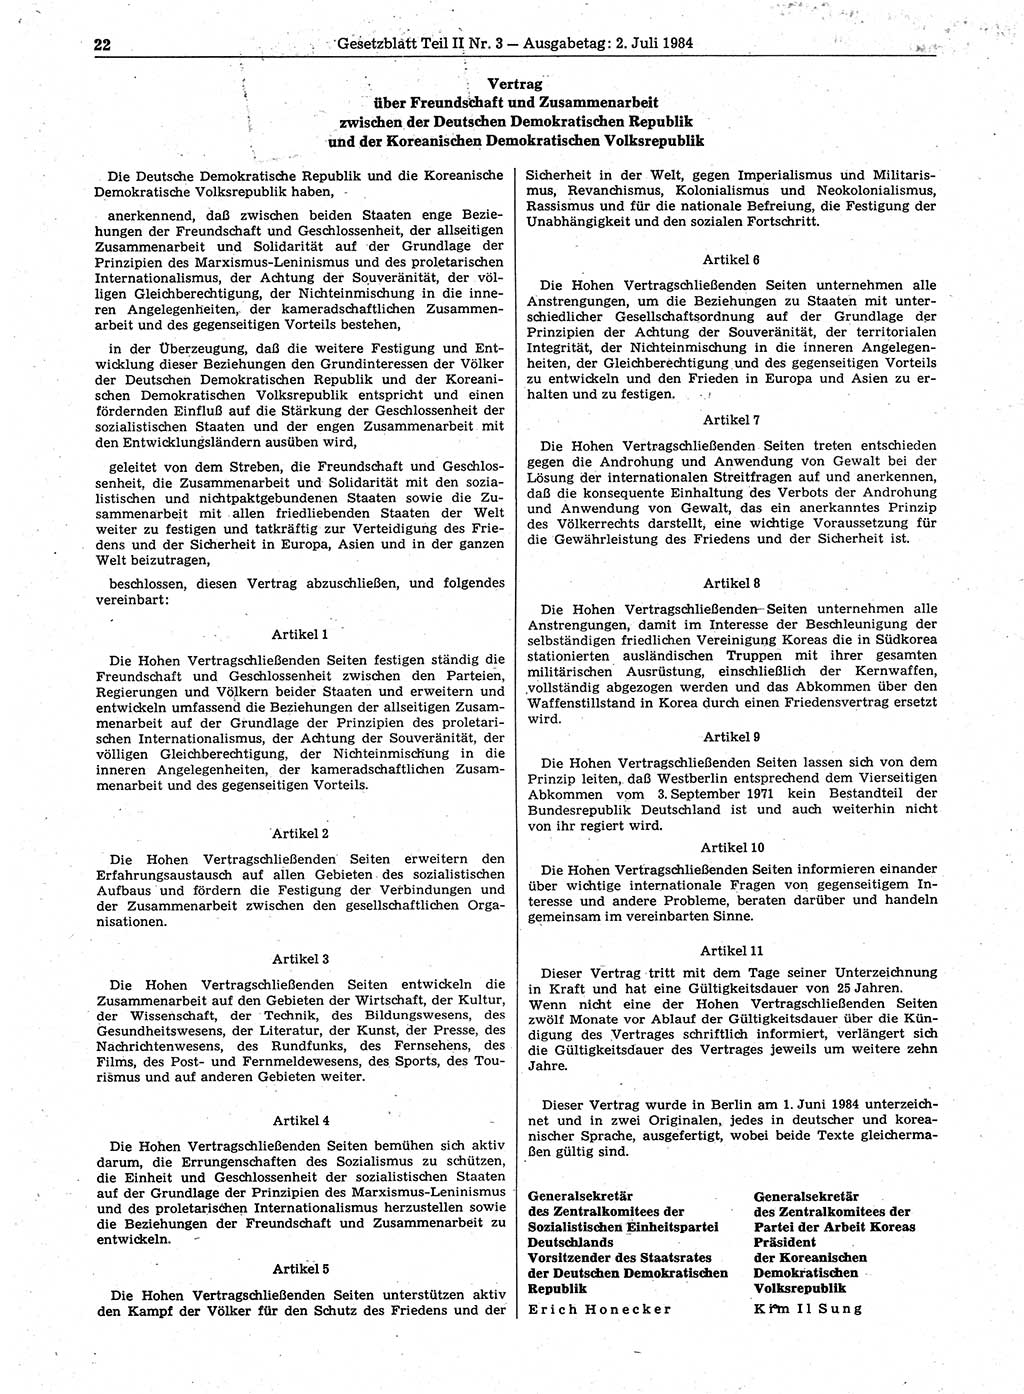 Gesetzblatt (GBl.) der Deutschen Demokratischen Republik (DDR) Teil ⅠⅠ 1984, Seite 22 (GBl. DDR ⅠⅠ 1984, S. 22)